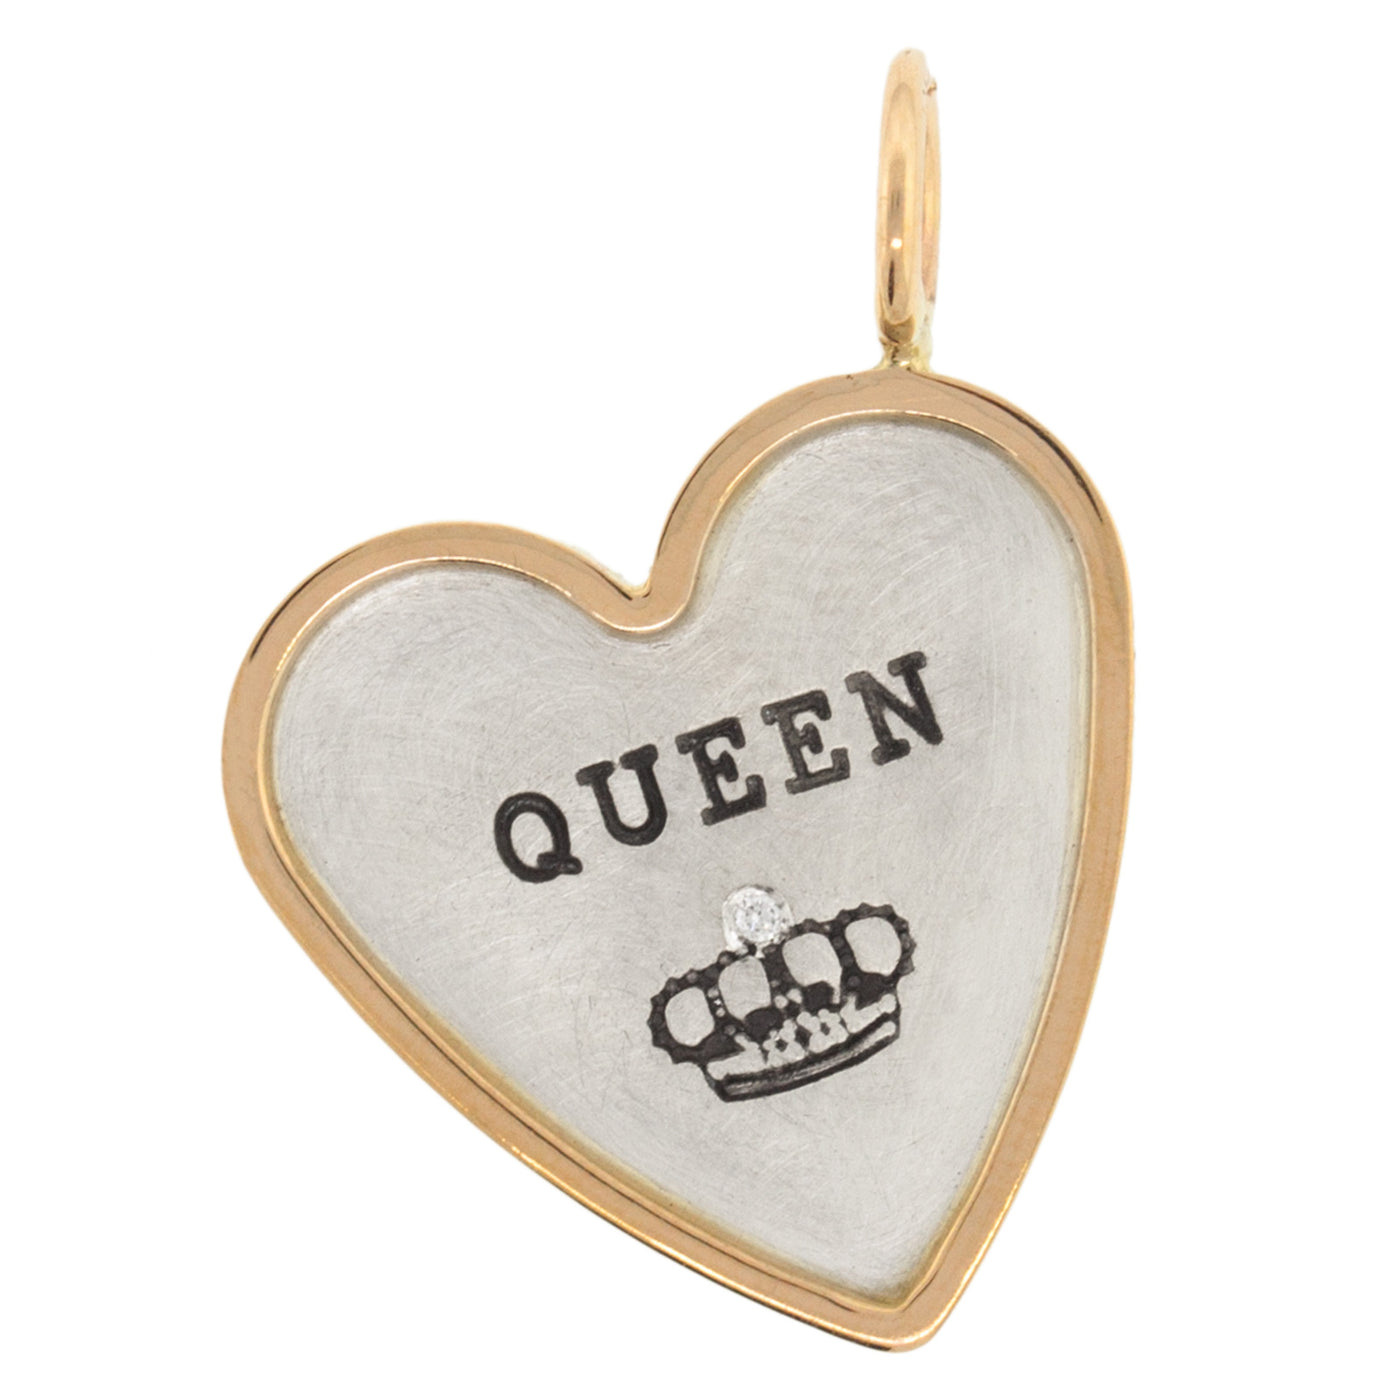 Queen Heart Charm